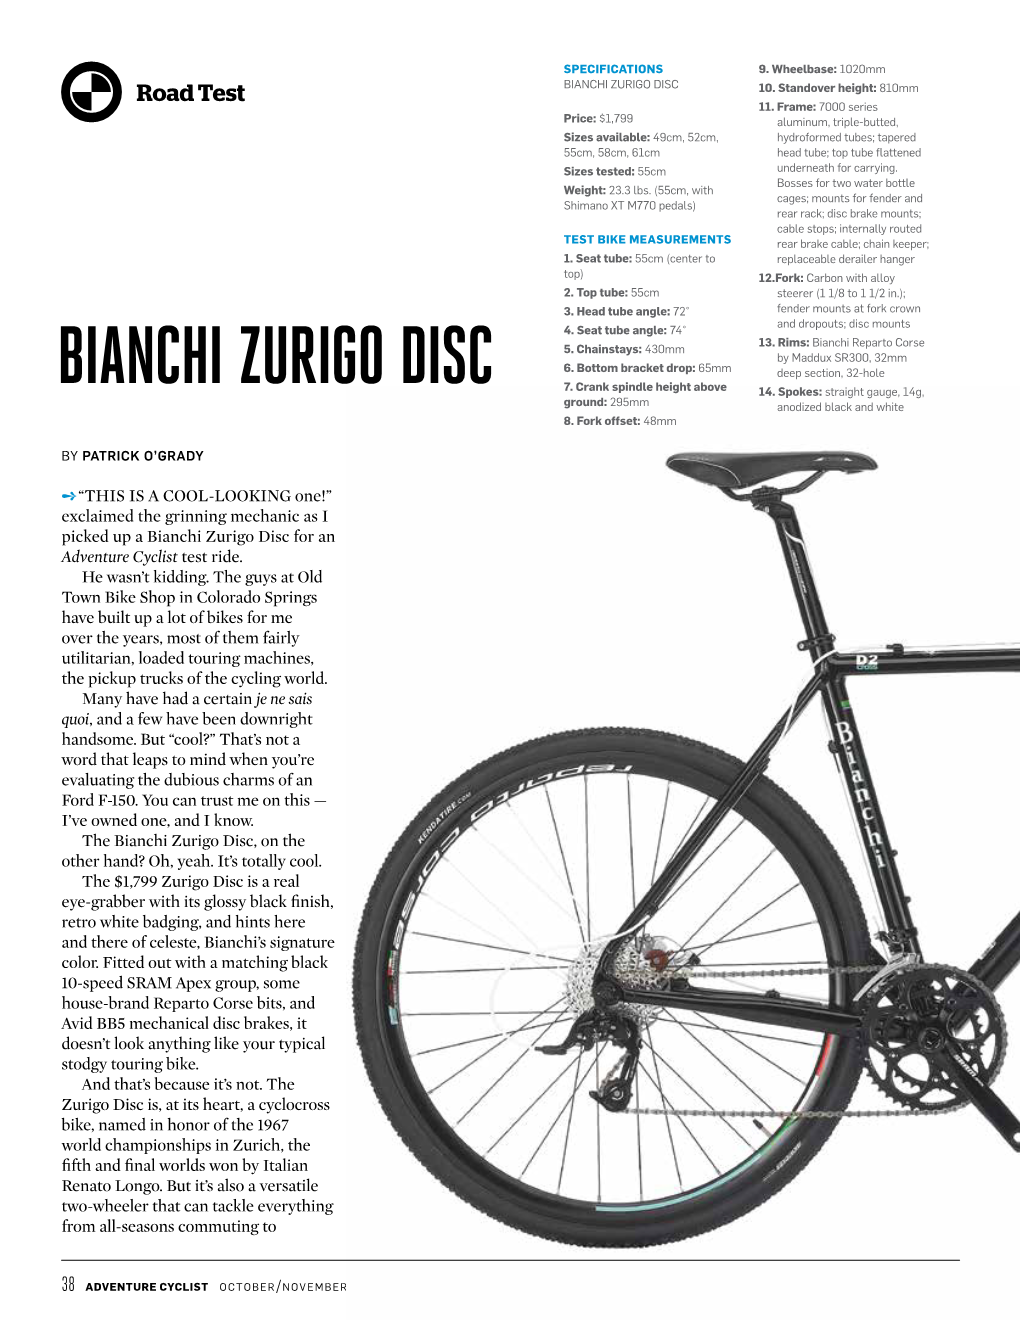 Bianchi Zurigo Disc 10